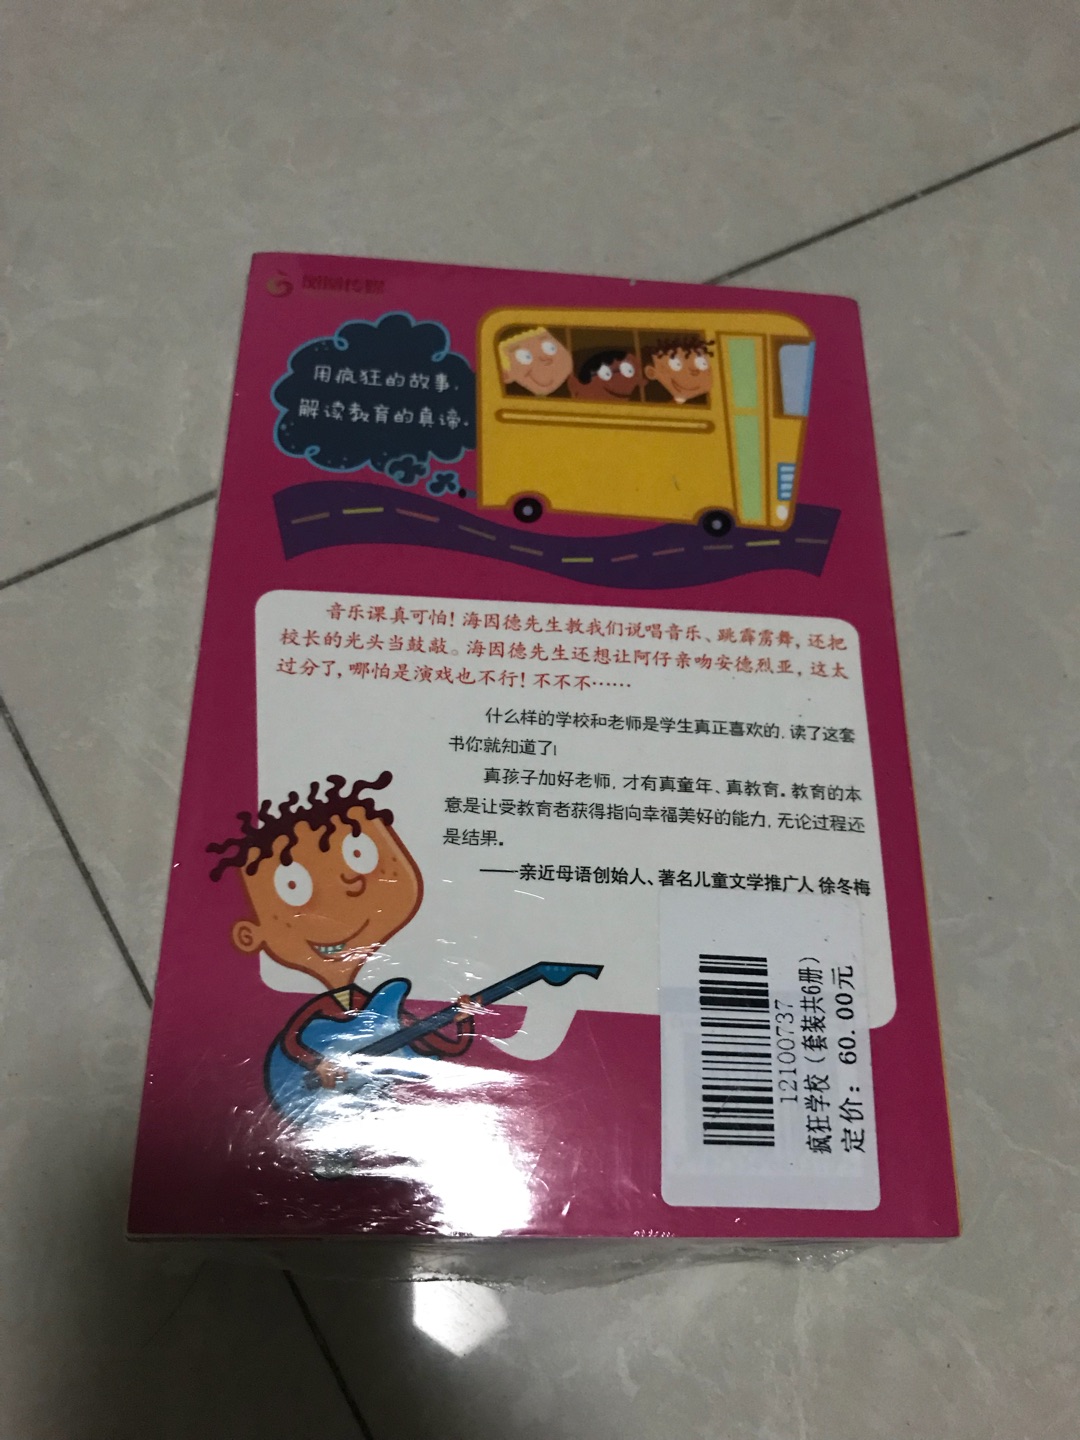 跟风买的 送给了同事的儿子  四年级的孩子表示很喜欢 据说英文原版更好看 打算下次入一套自己看